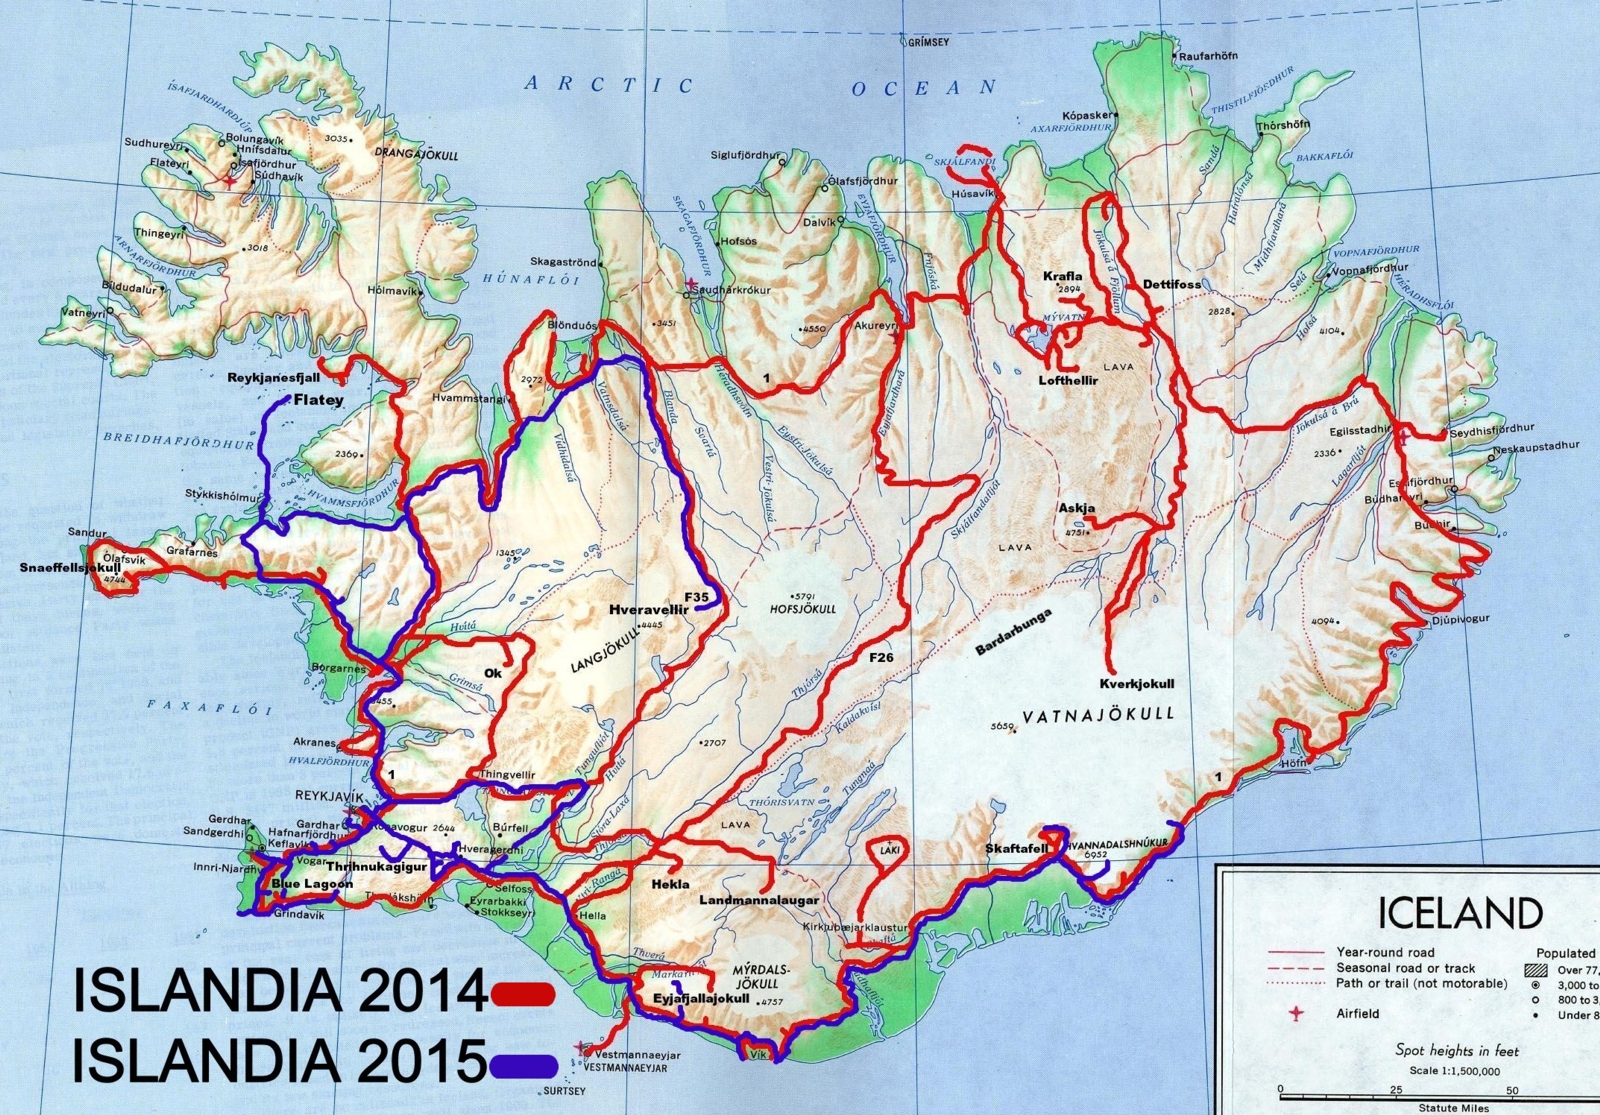 Islandia 2014 i 2015 - trasa przejazdu.